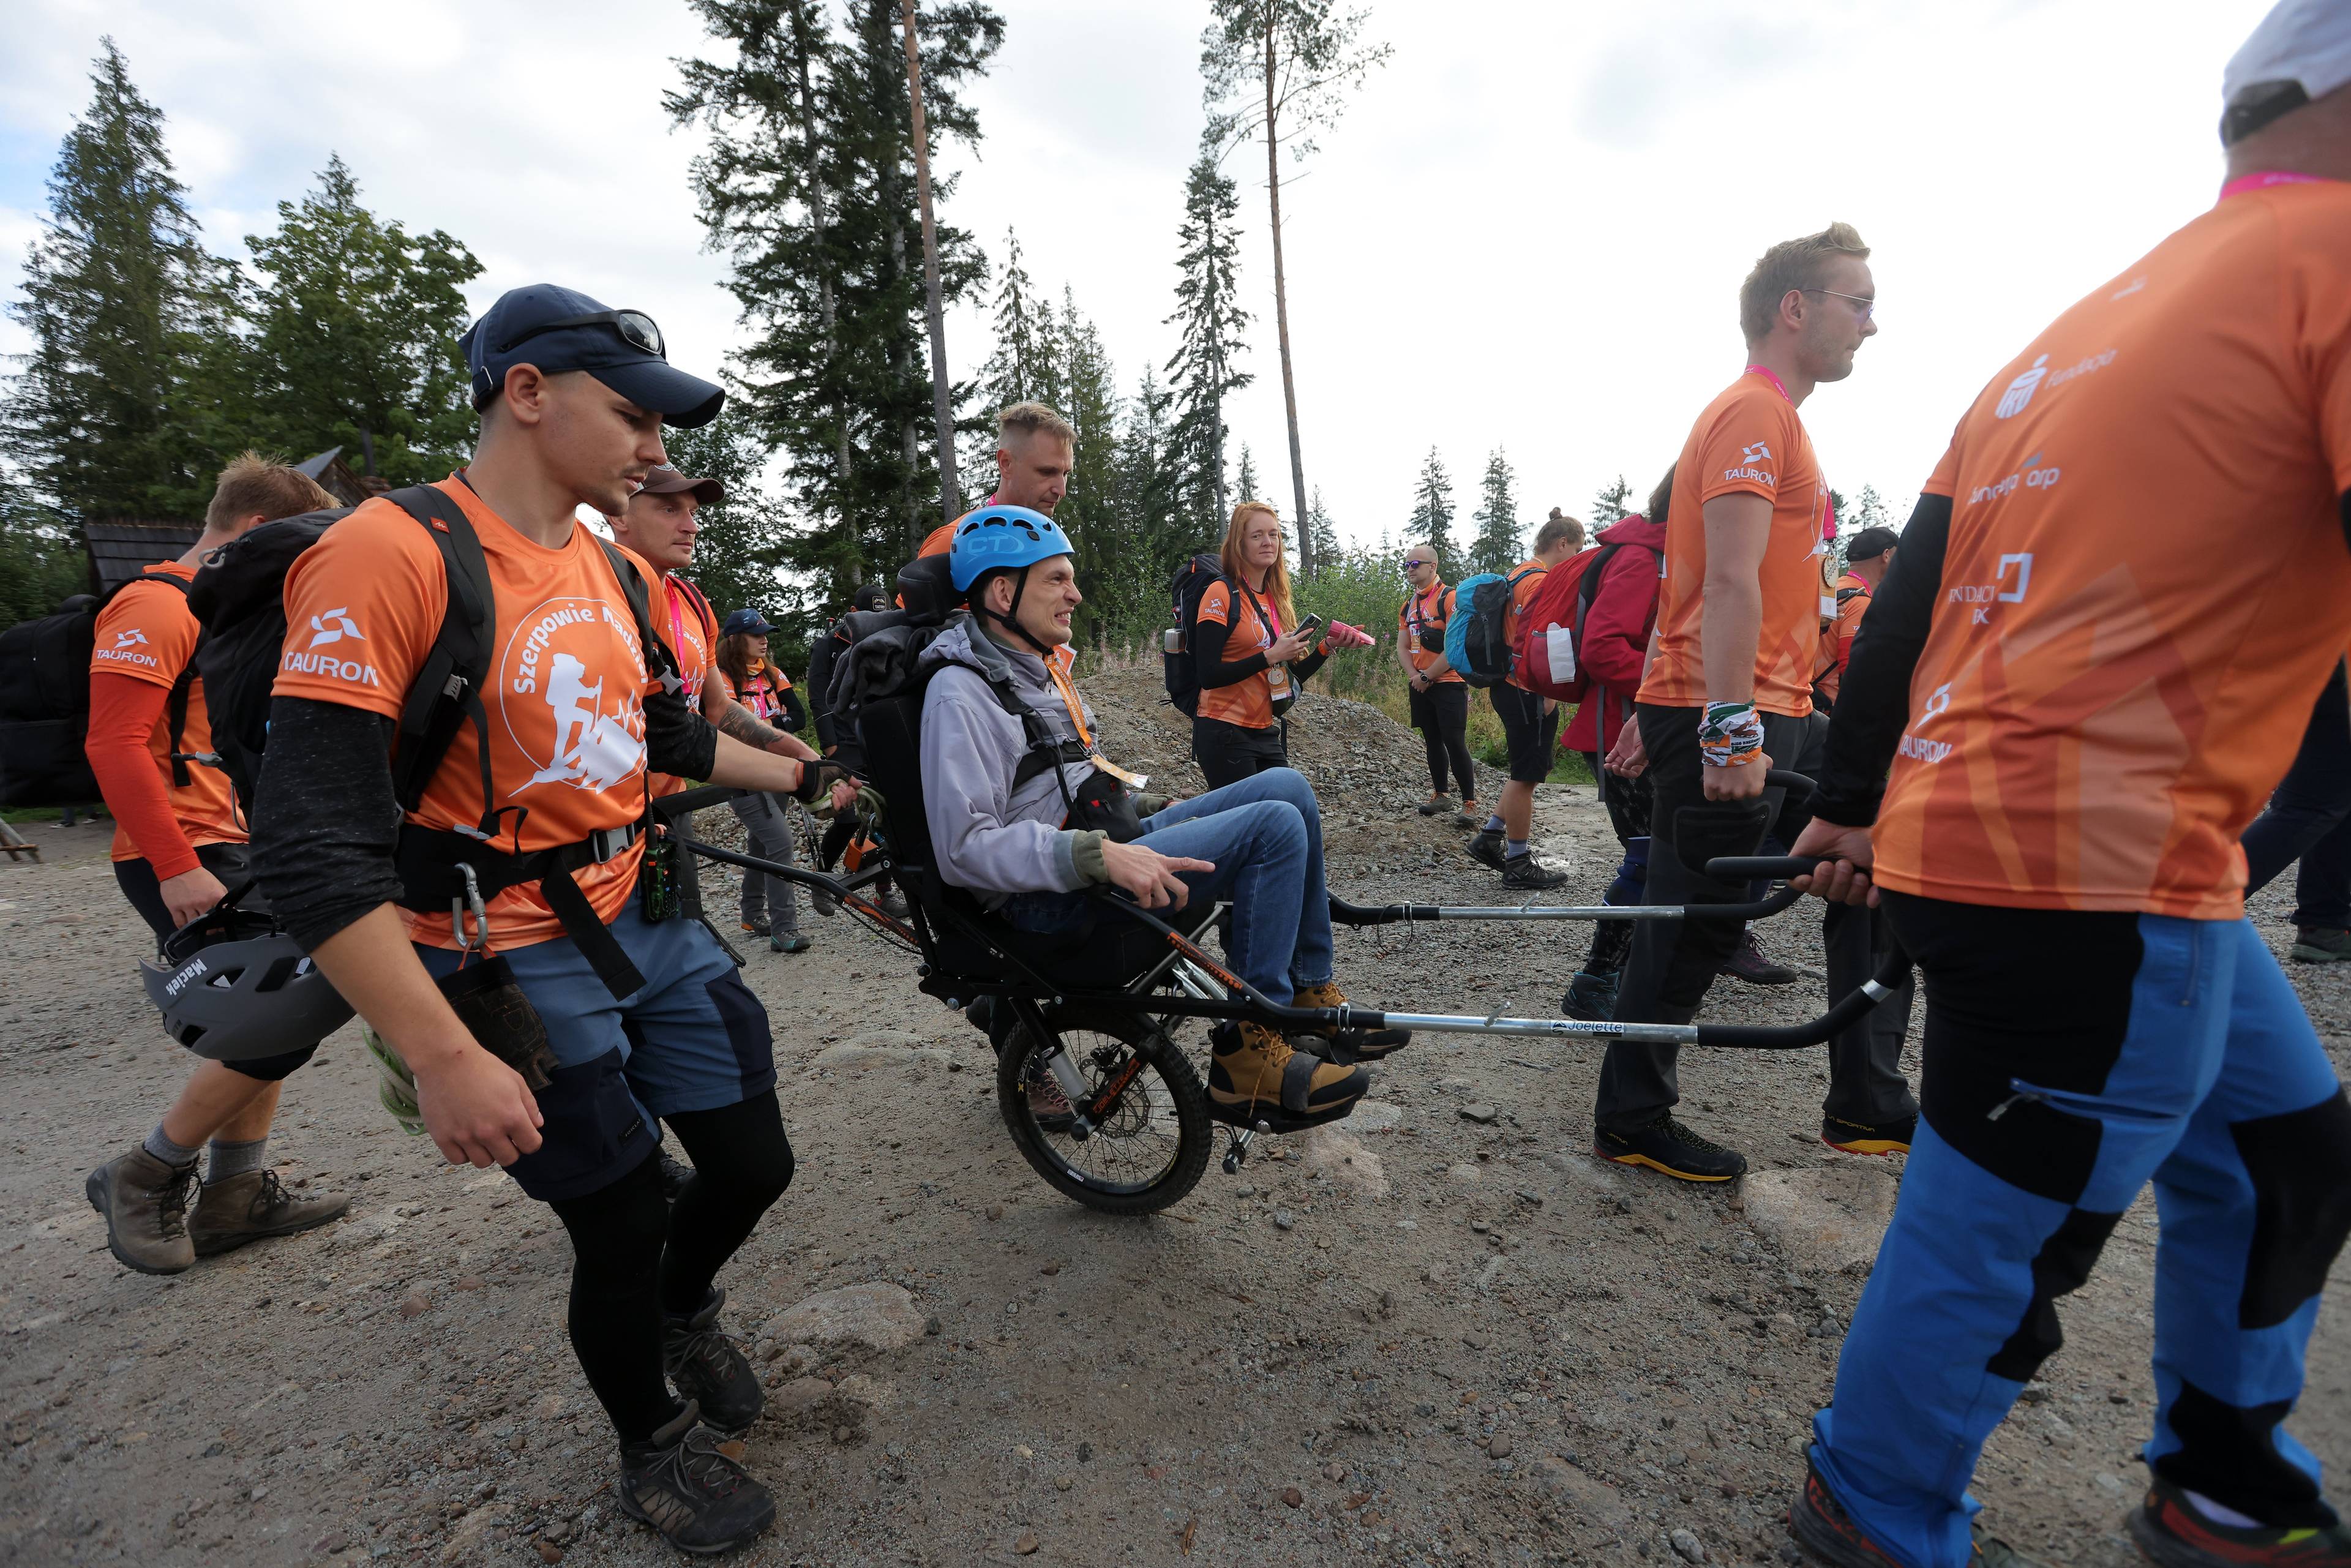 Wyprawa w góry z idziaem osoby z niepełnosprawnością - w specjalnym wózku i w kasku